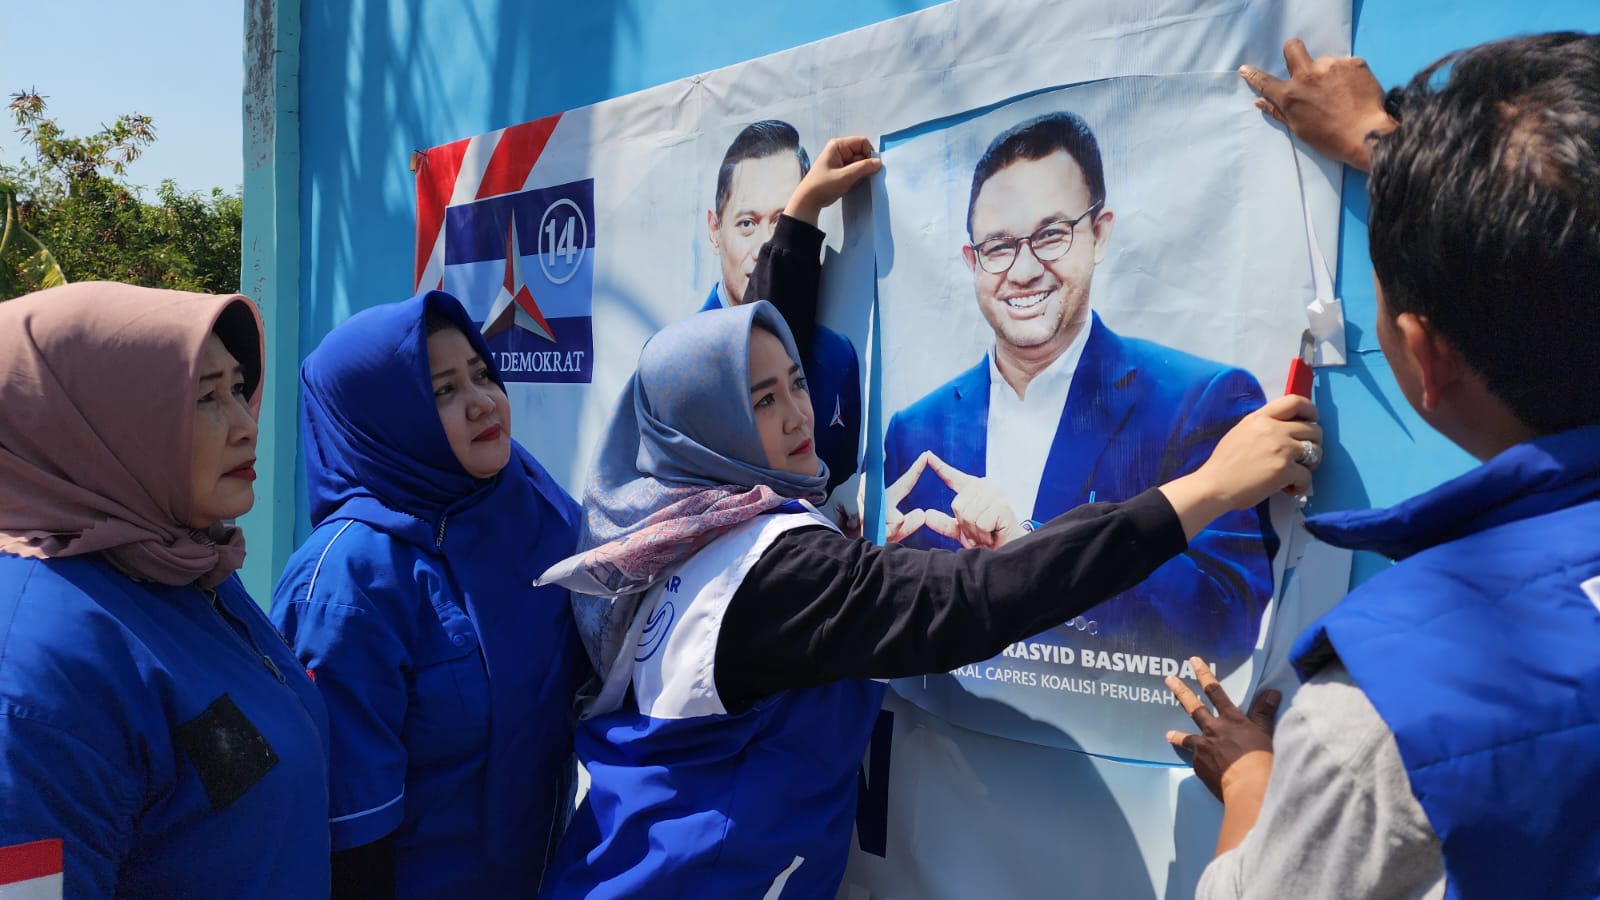 Demokrat Kota Cirebon Ramai-ramai Turunkan Gambar Anies, Kecewa Keputusan Sepihak untuk Bacawapres 